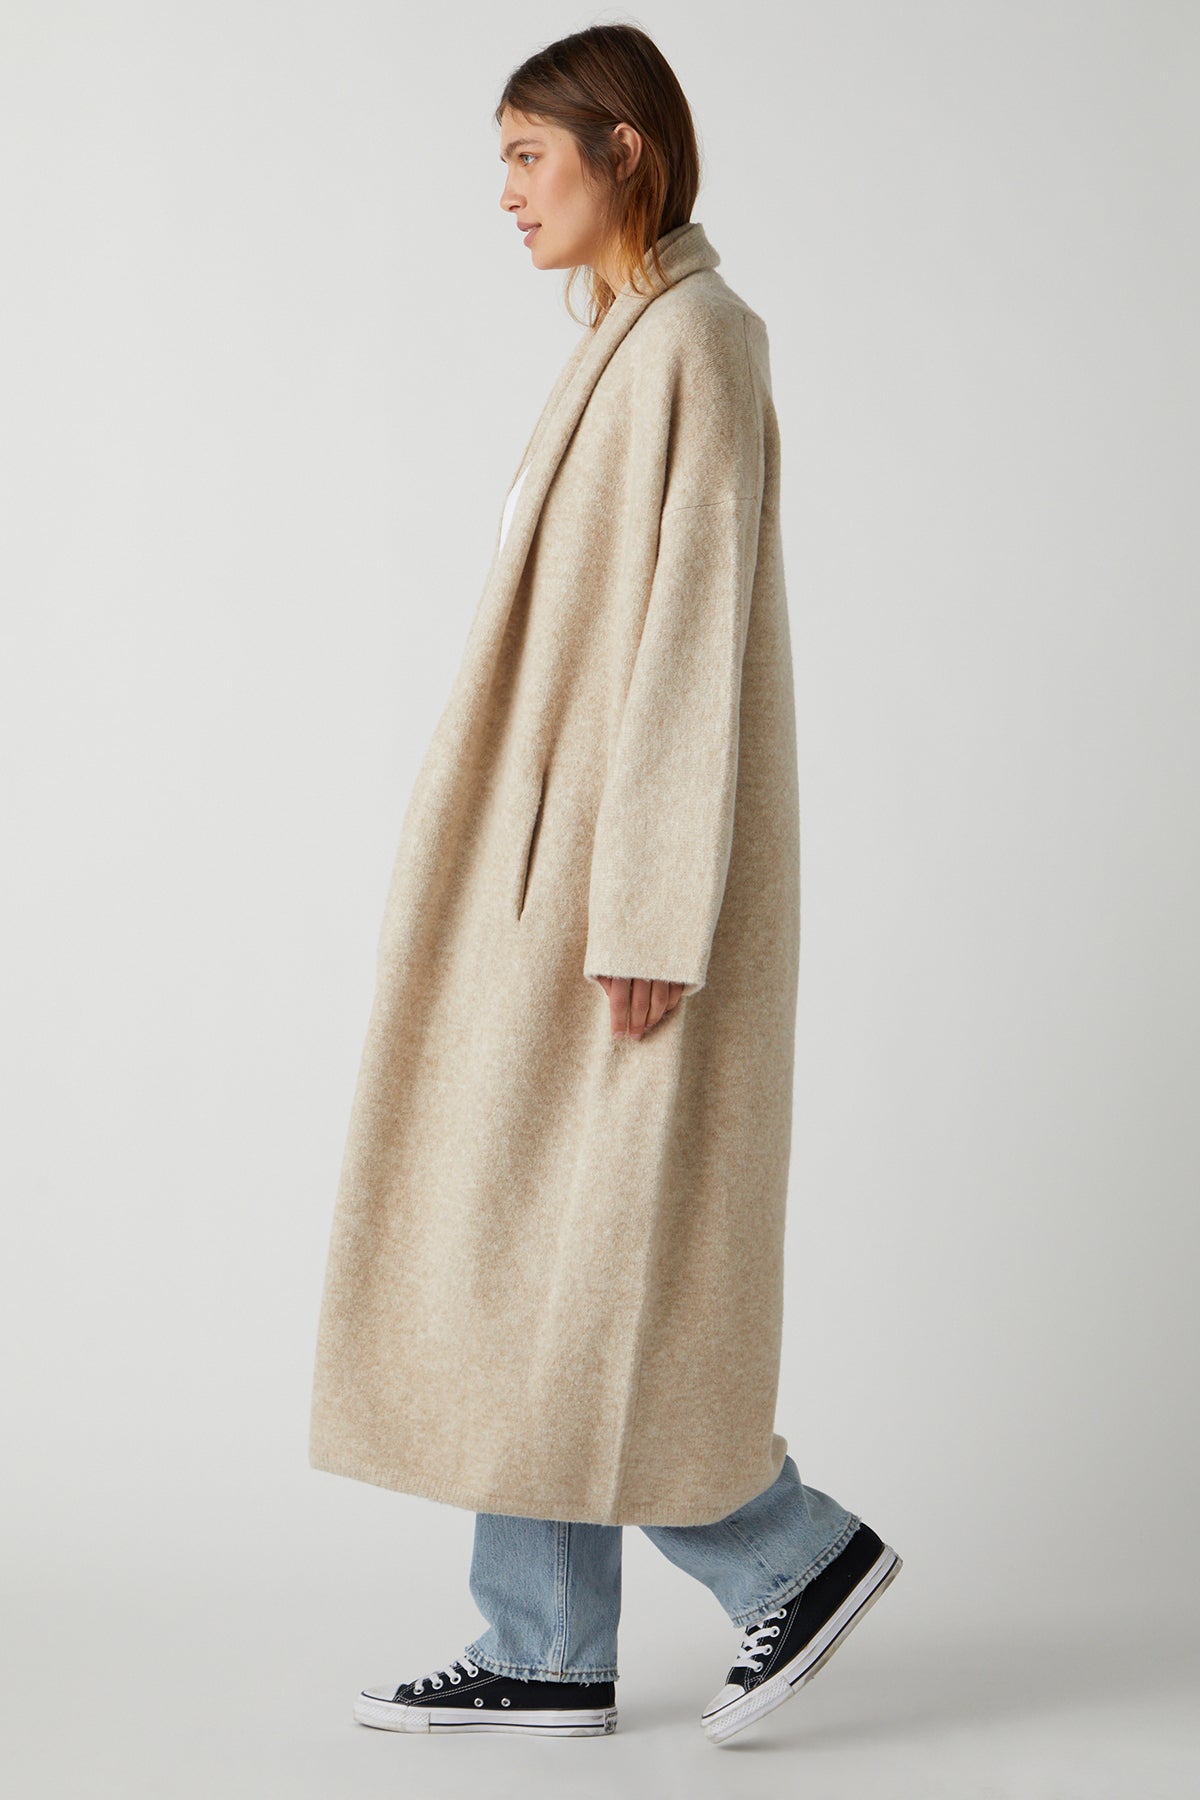 A woman wearing a Velvet by Jenny Graham CARMEL COAT in beige.-25483375706305